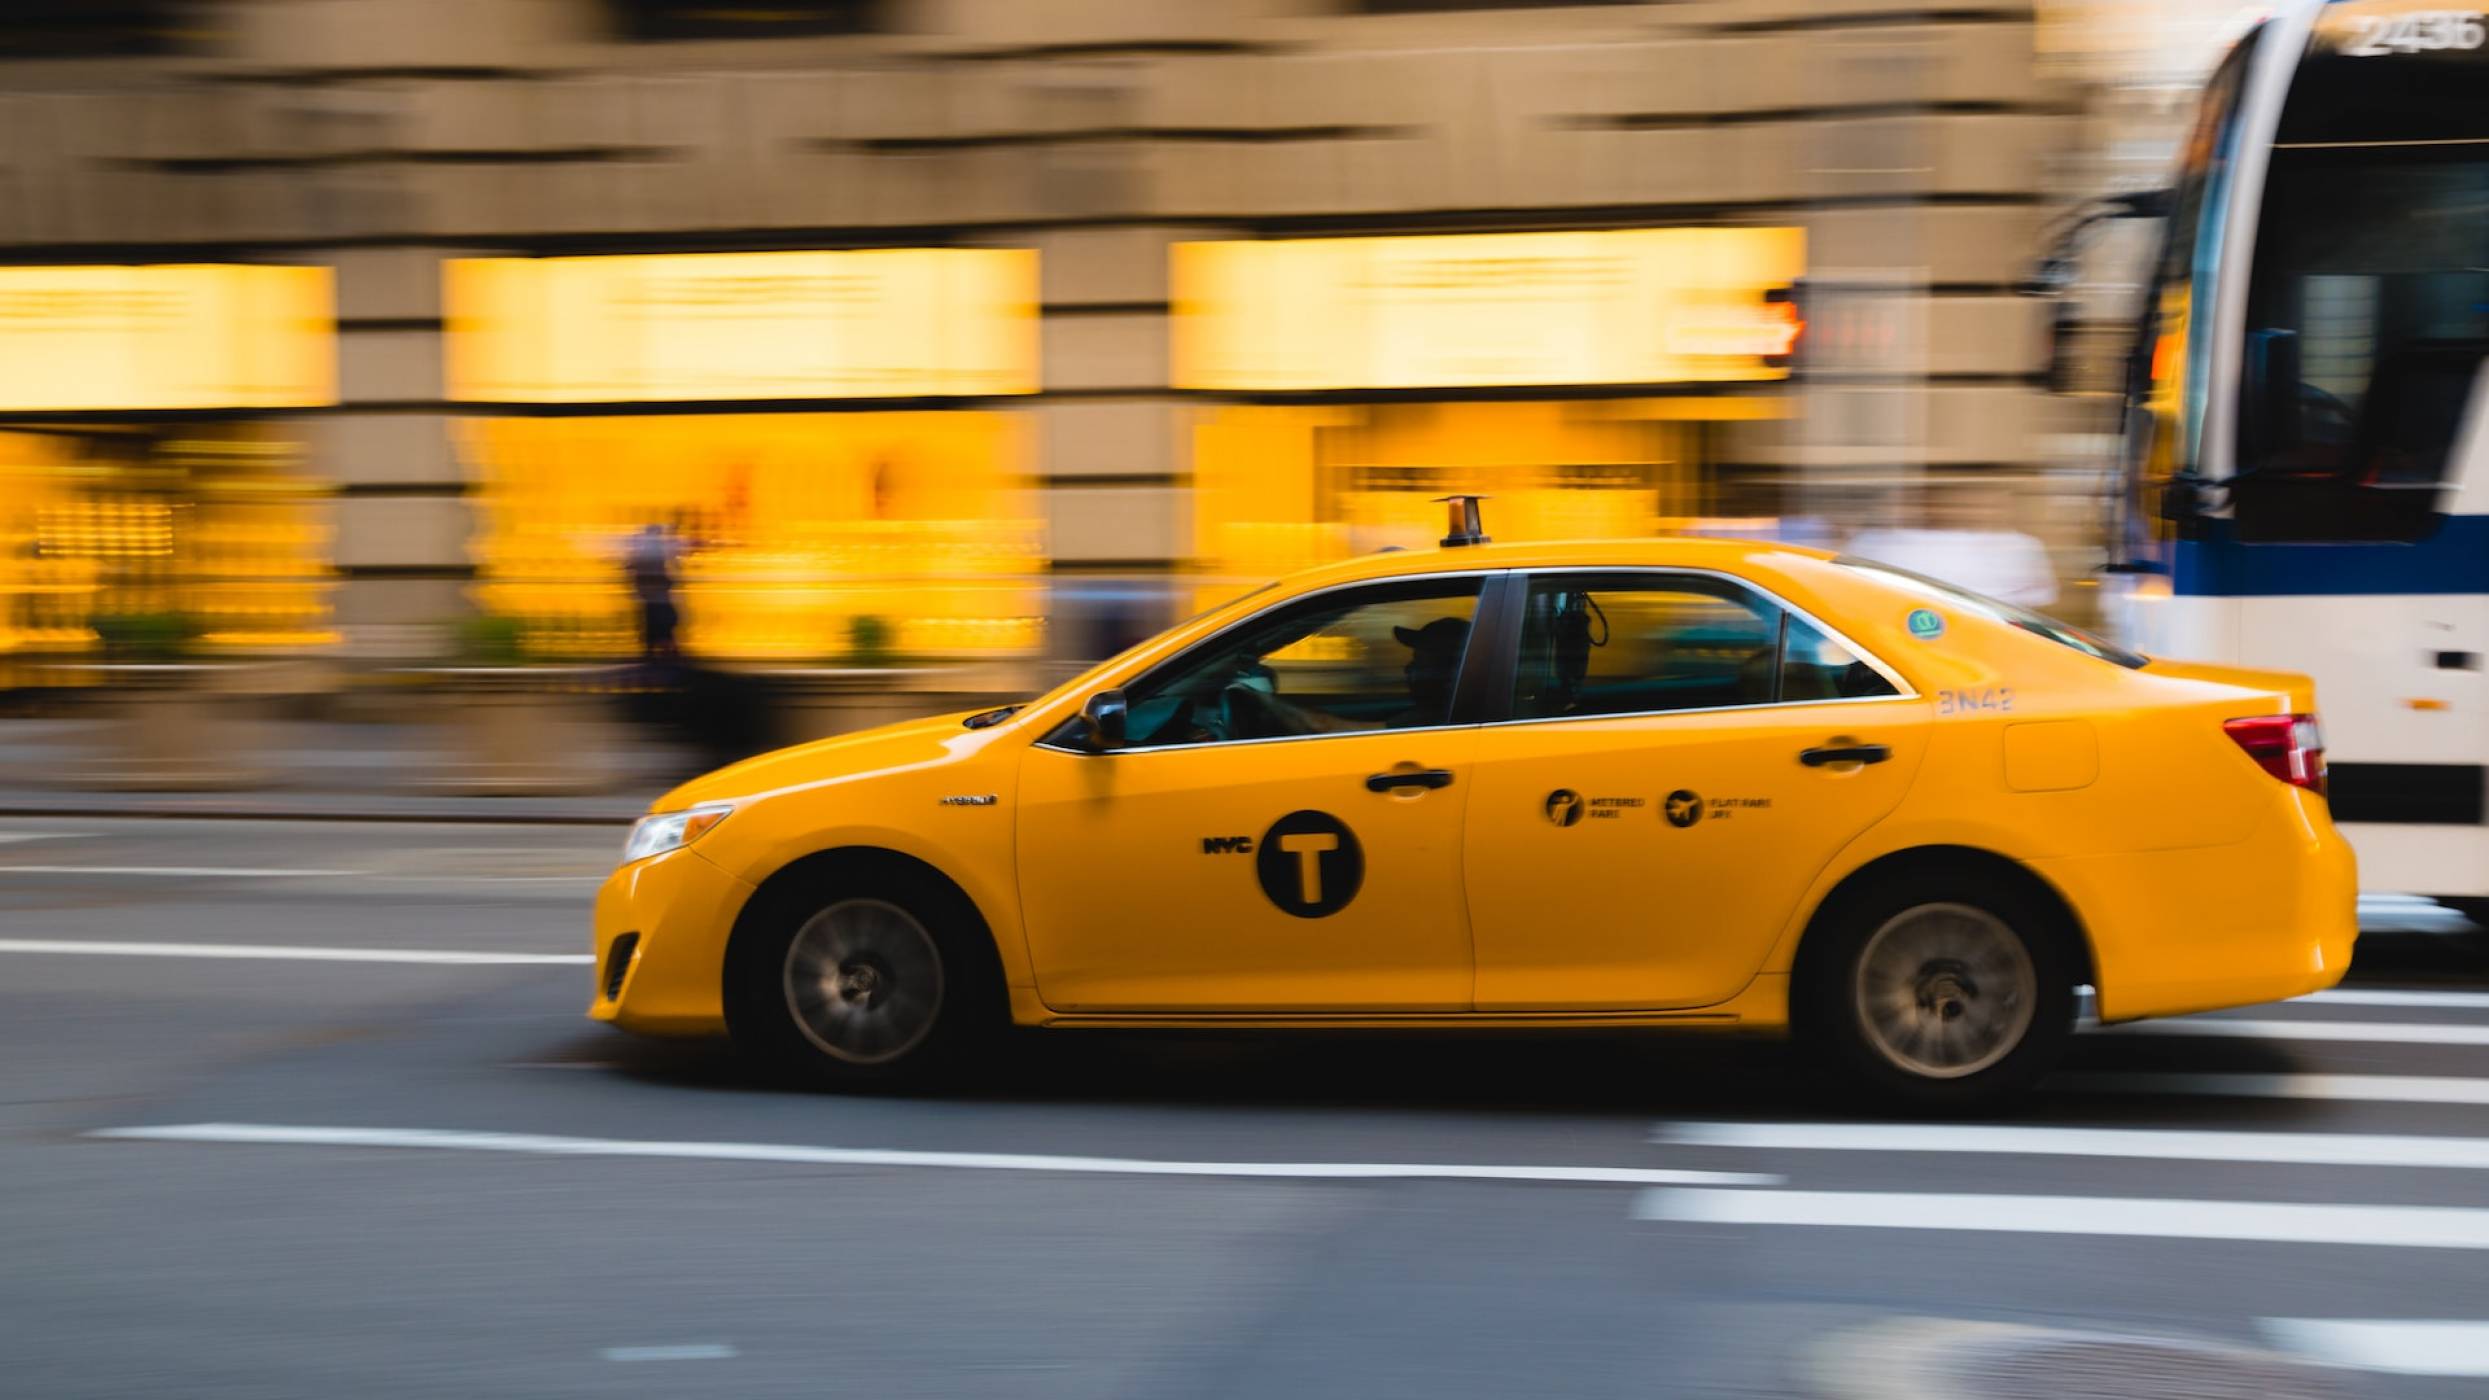 Как го правят по света: Ню Йорк смята да се справи с високите скорости по улиците 